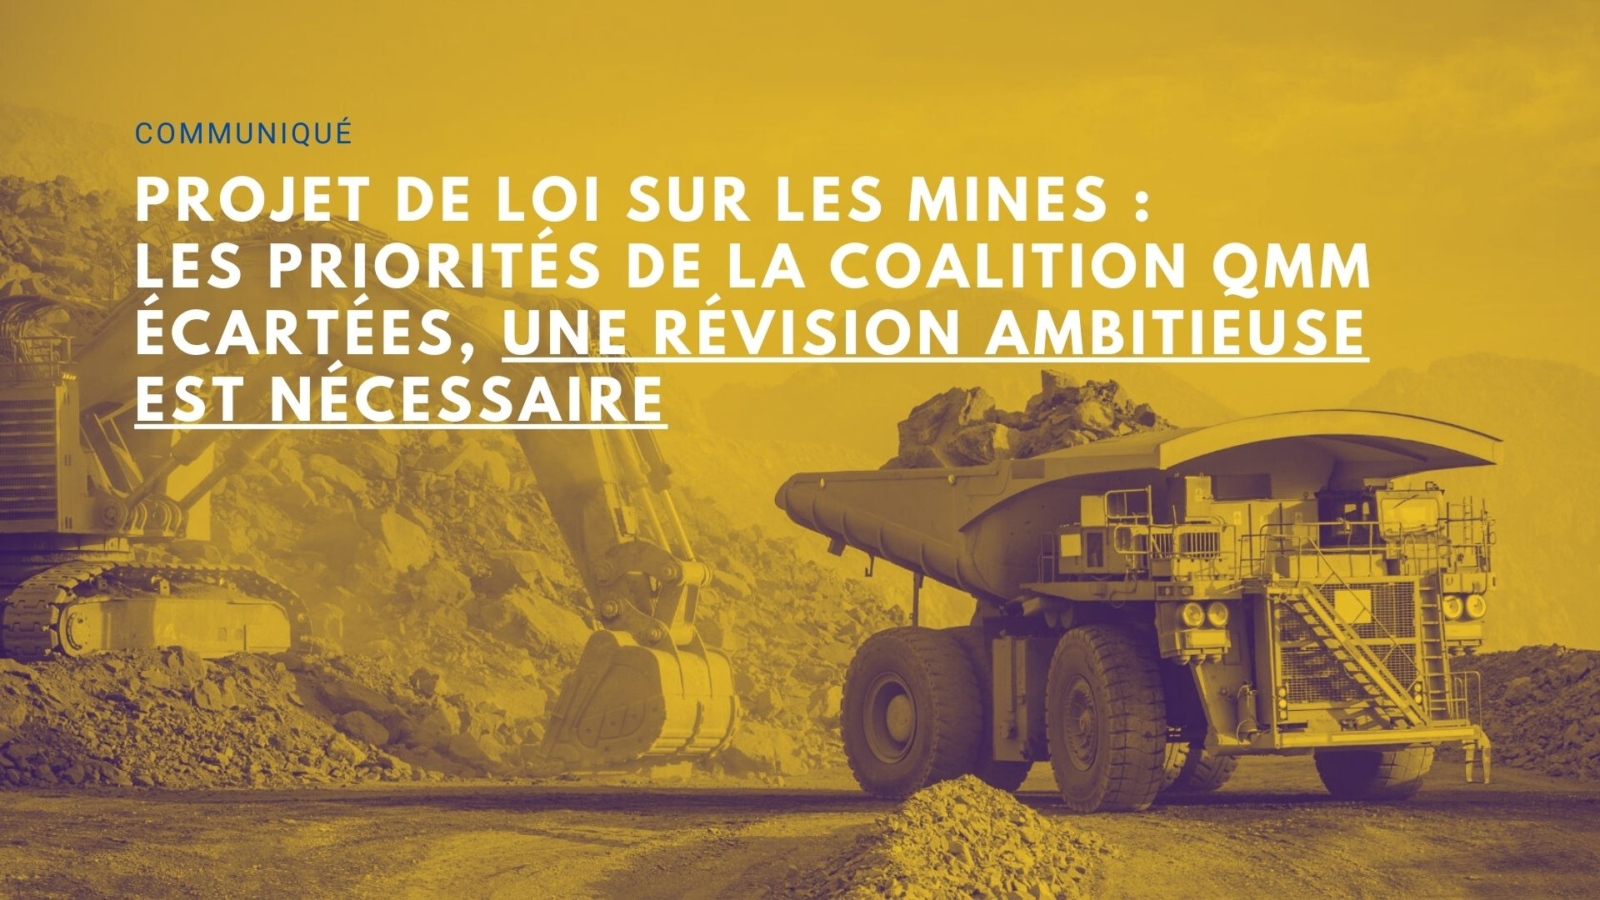 18-07-2024-Projet-de-loi-sur-les-mines-publication-de-lanalyse-de-QMM-1600x900